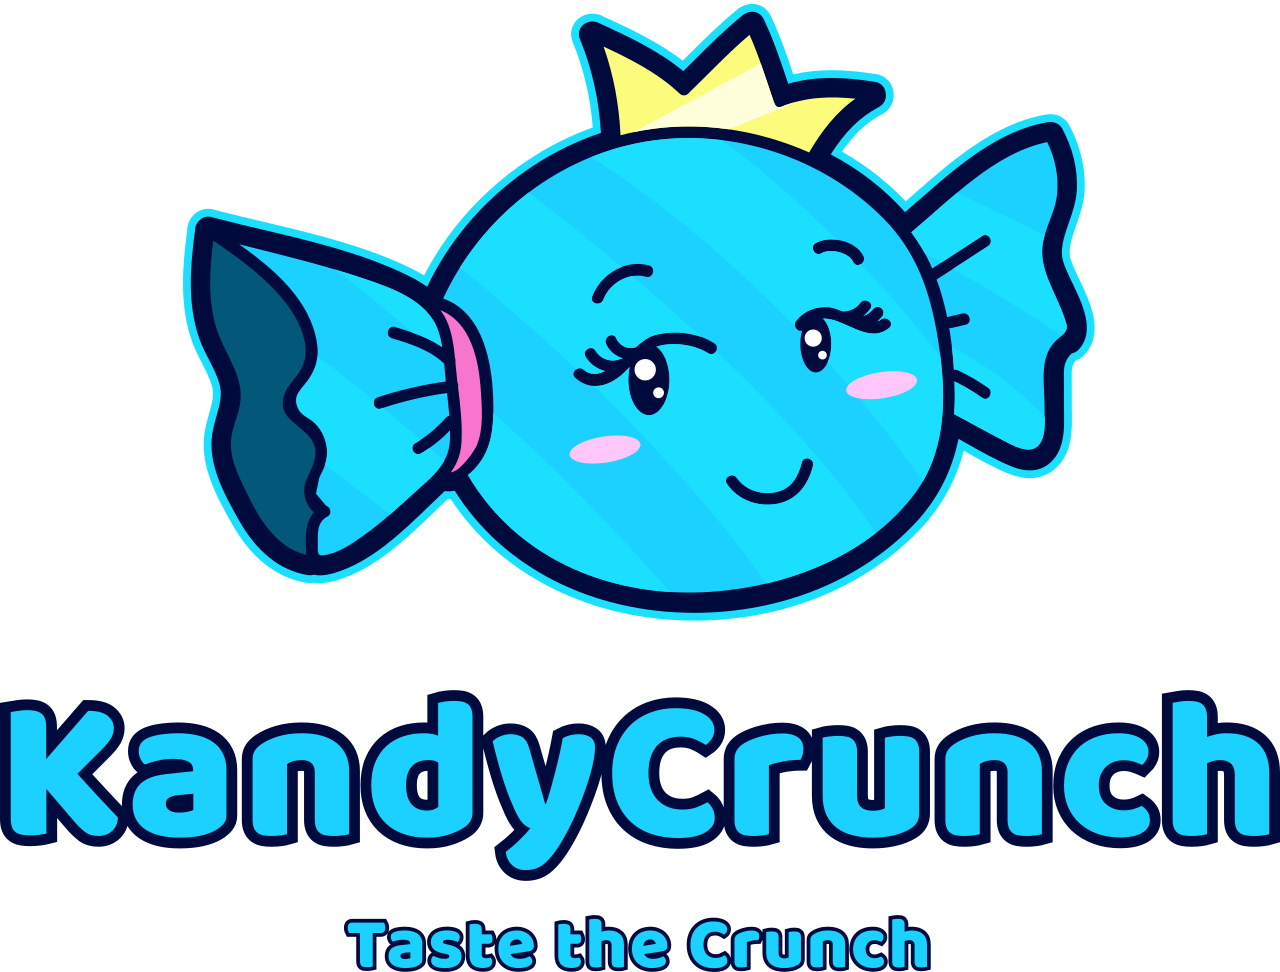 KandyCrunch's web page